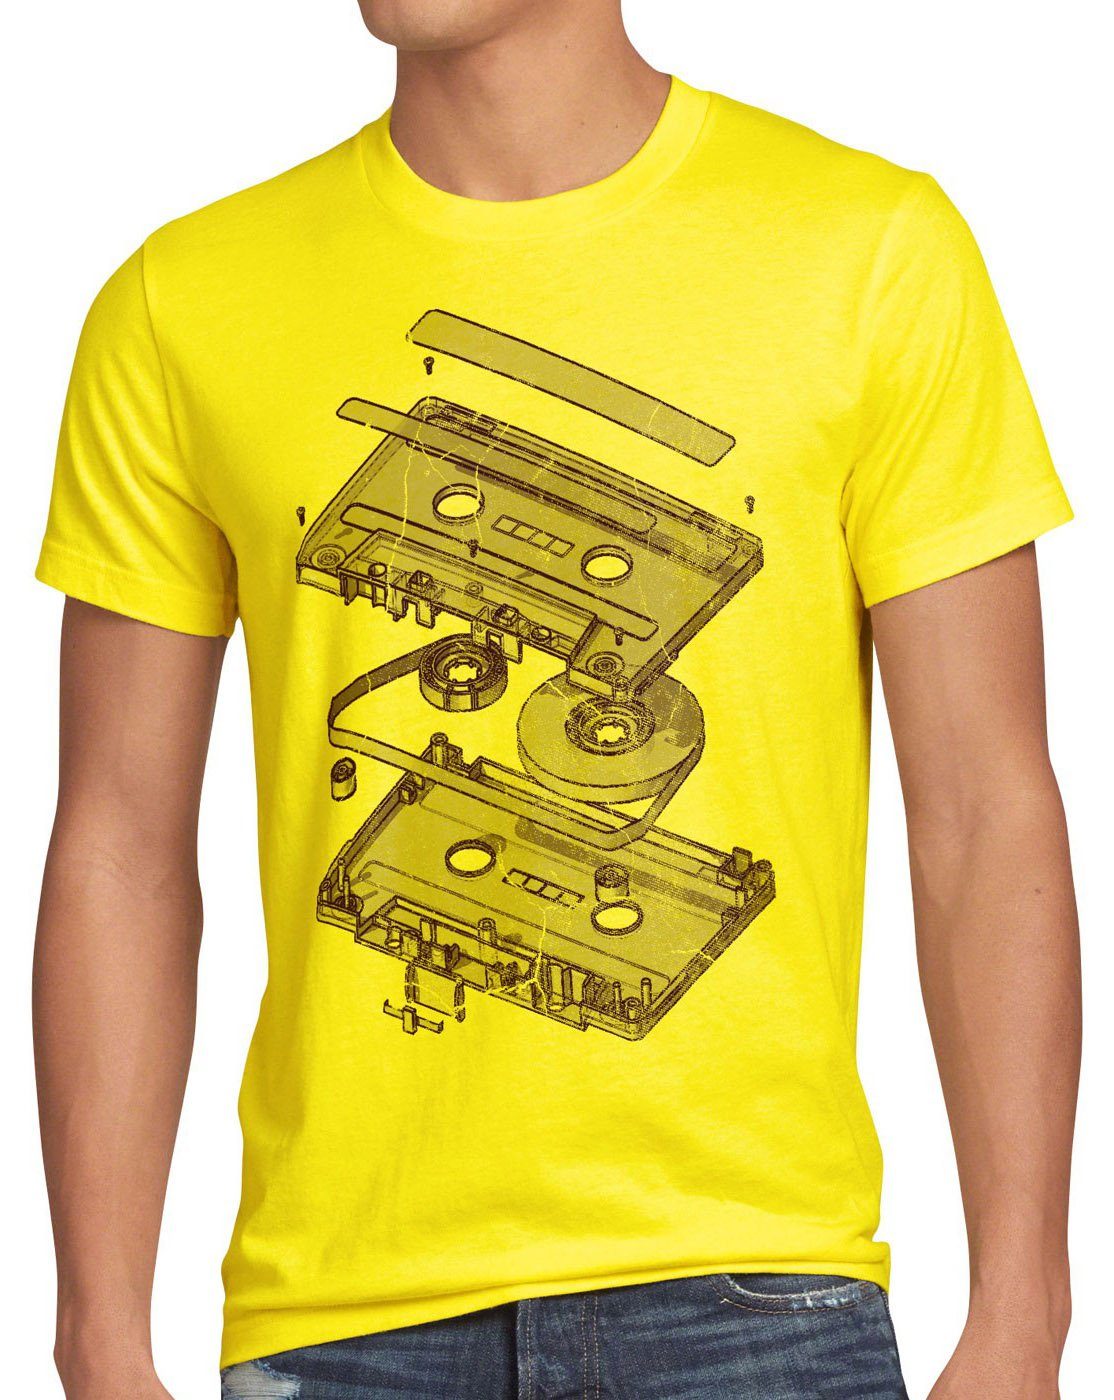 style3 Print-Shirt Herren T-Shirt 3D Kassette gelb 80er cd dj mc disko Tape analog ndw vinyl turntable